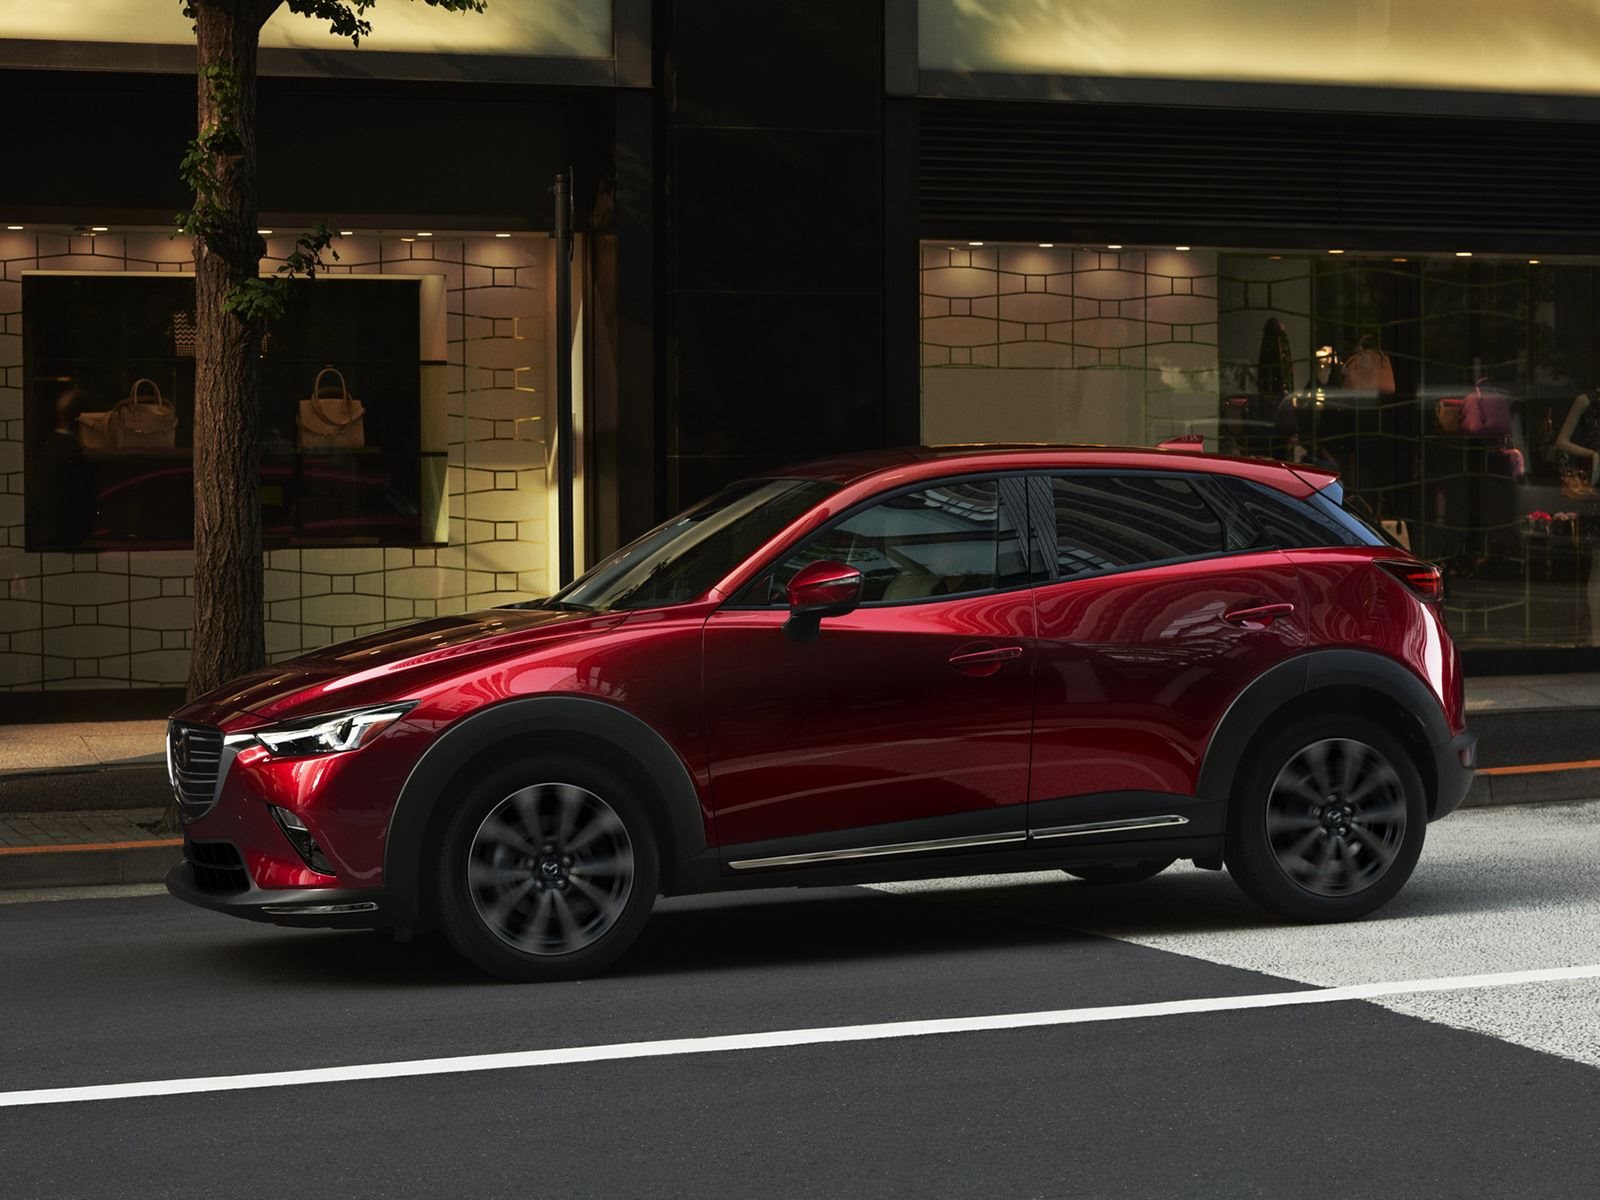 Под капотом 2019 CX-3 стоит более совершенная версия 2,0-литрового бензинового двигателя Mazda SKYACTIV-G объемом 2,0 литра, который теперь производит 148 лошадиных сил и 200 Нм крутящего момента.